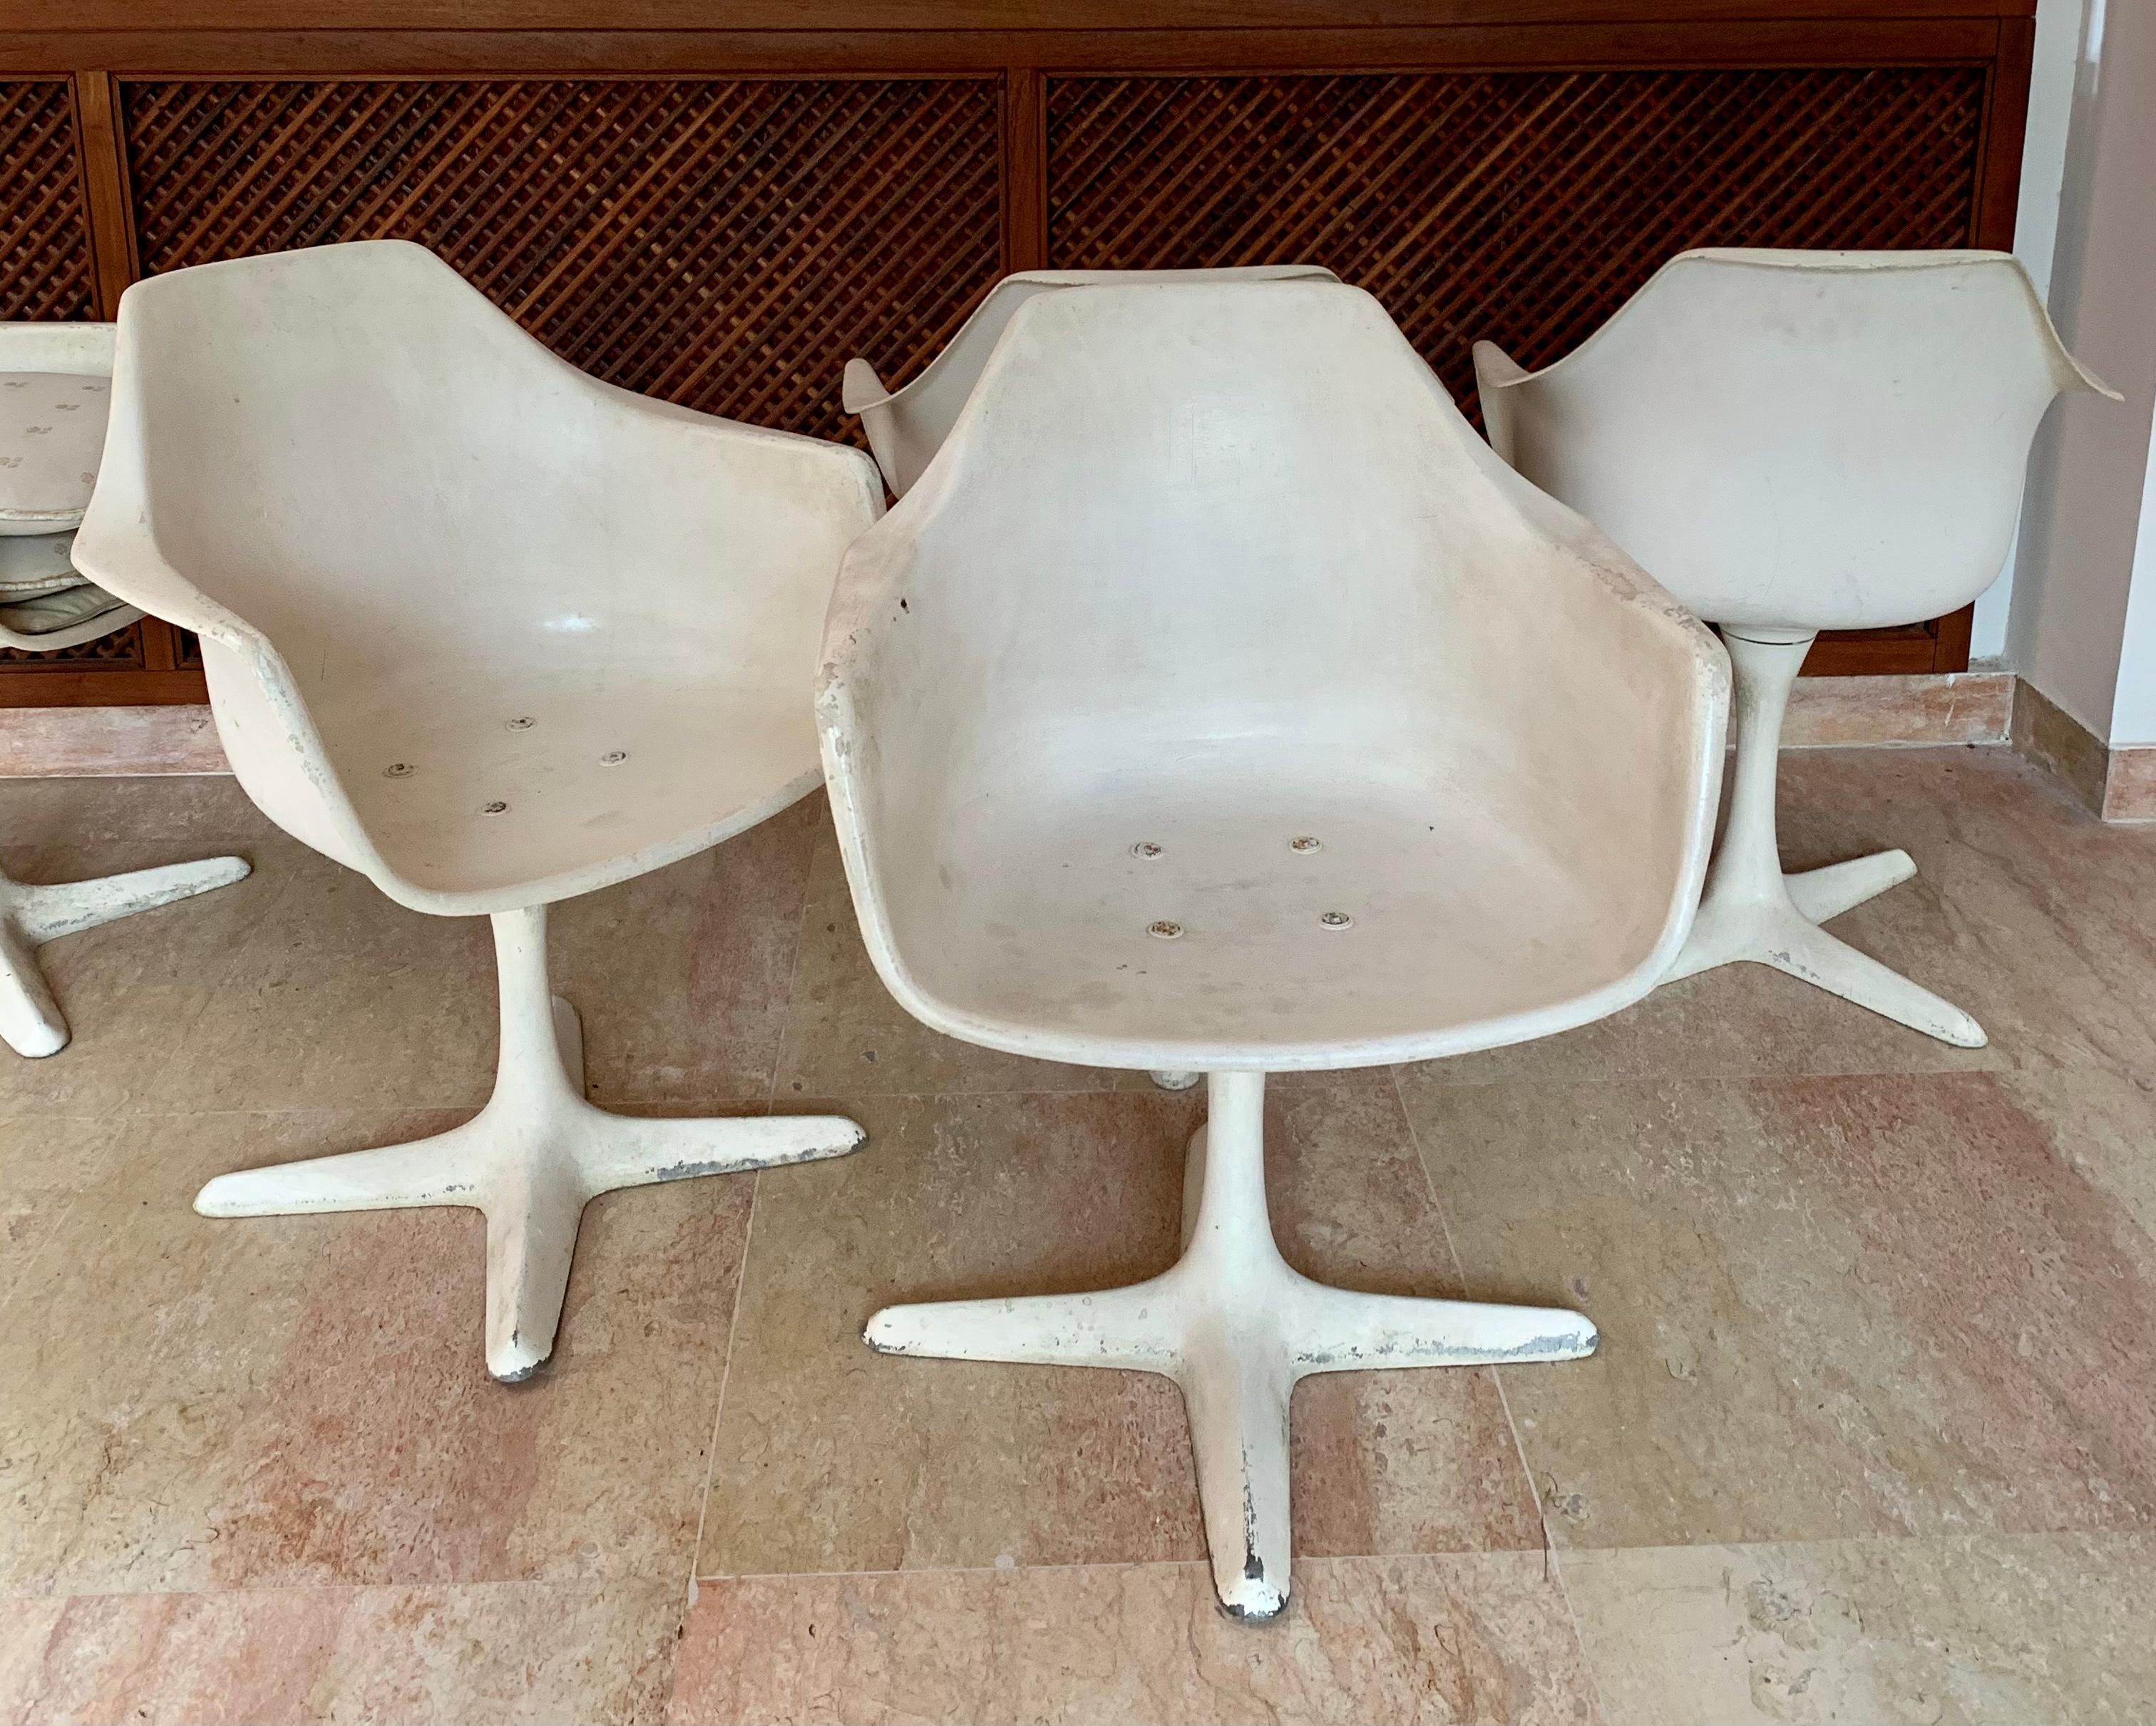 
6 fauteuils Maurice Burke, de style moderne du milieu du siècle, réalisés pour Arkana, un fabricant de meubles britannique. Chaises en fibre de verre moulée blanche reposant sur une base à 4 pieds en aluminium. Marqué sous le siège avec Arkana 116